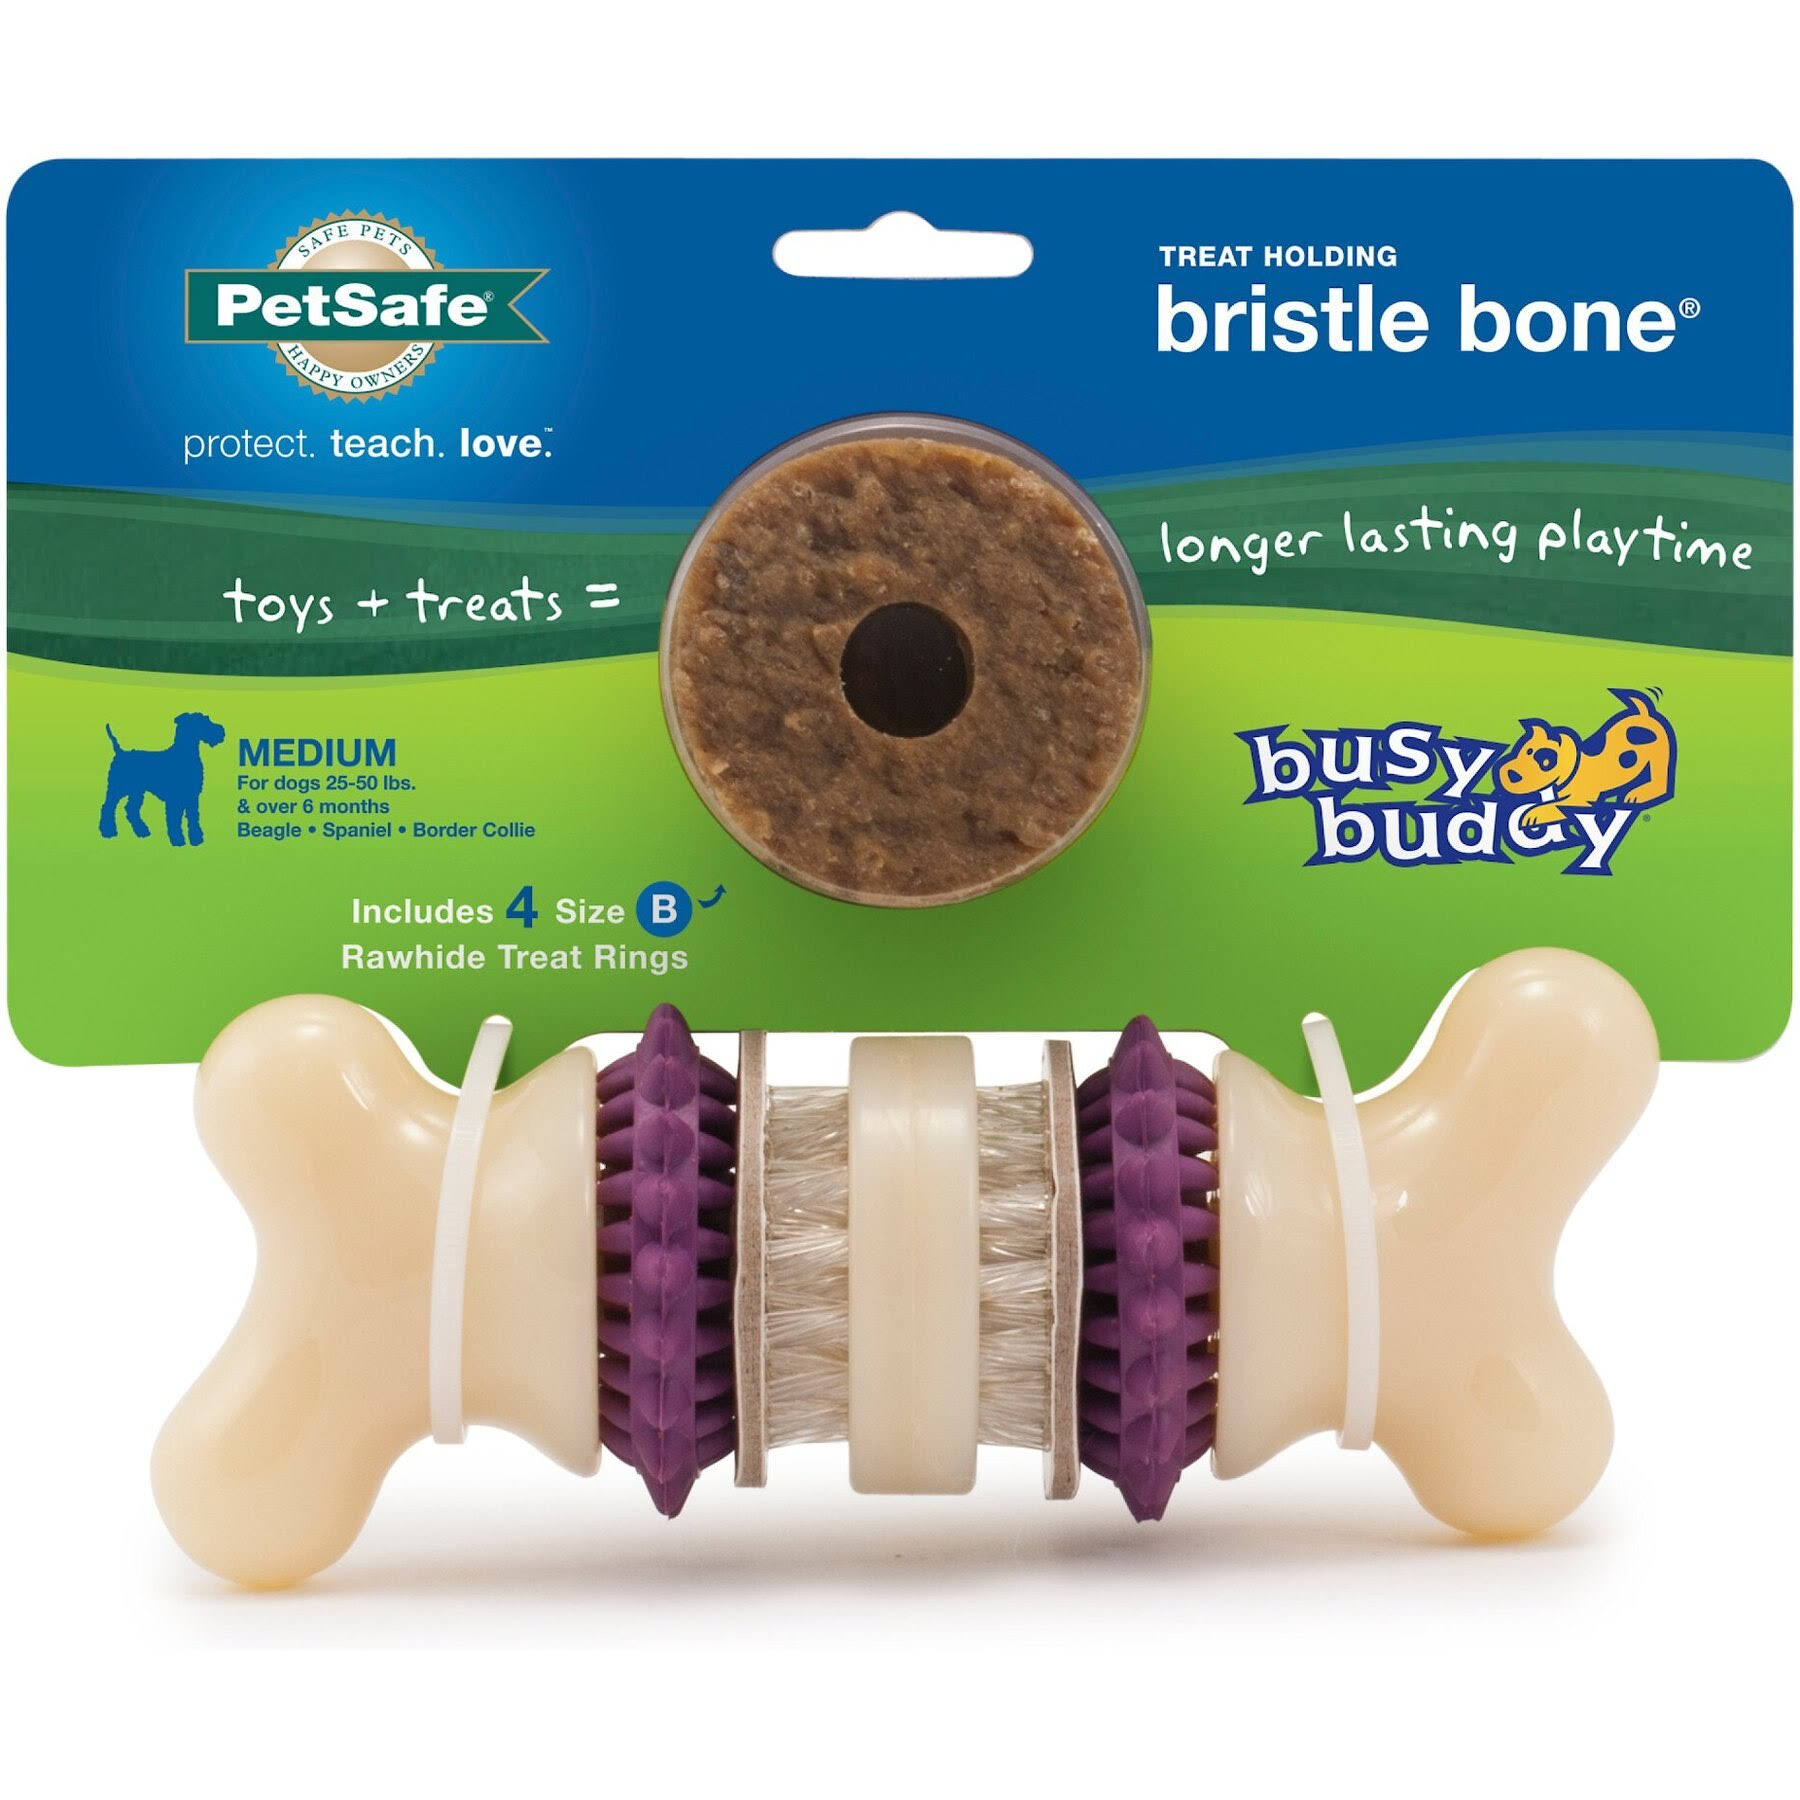 PetSafe Busy Buddy Bristle Bone Dog Toy - Medium